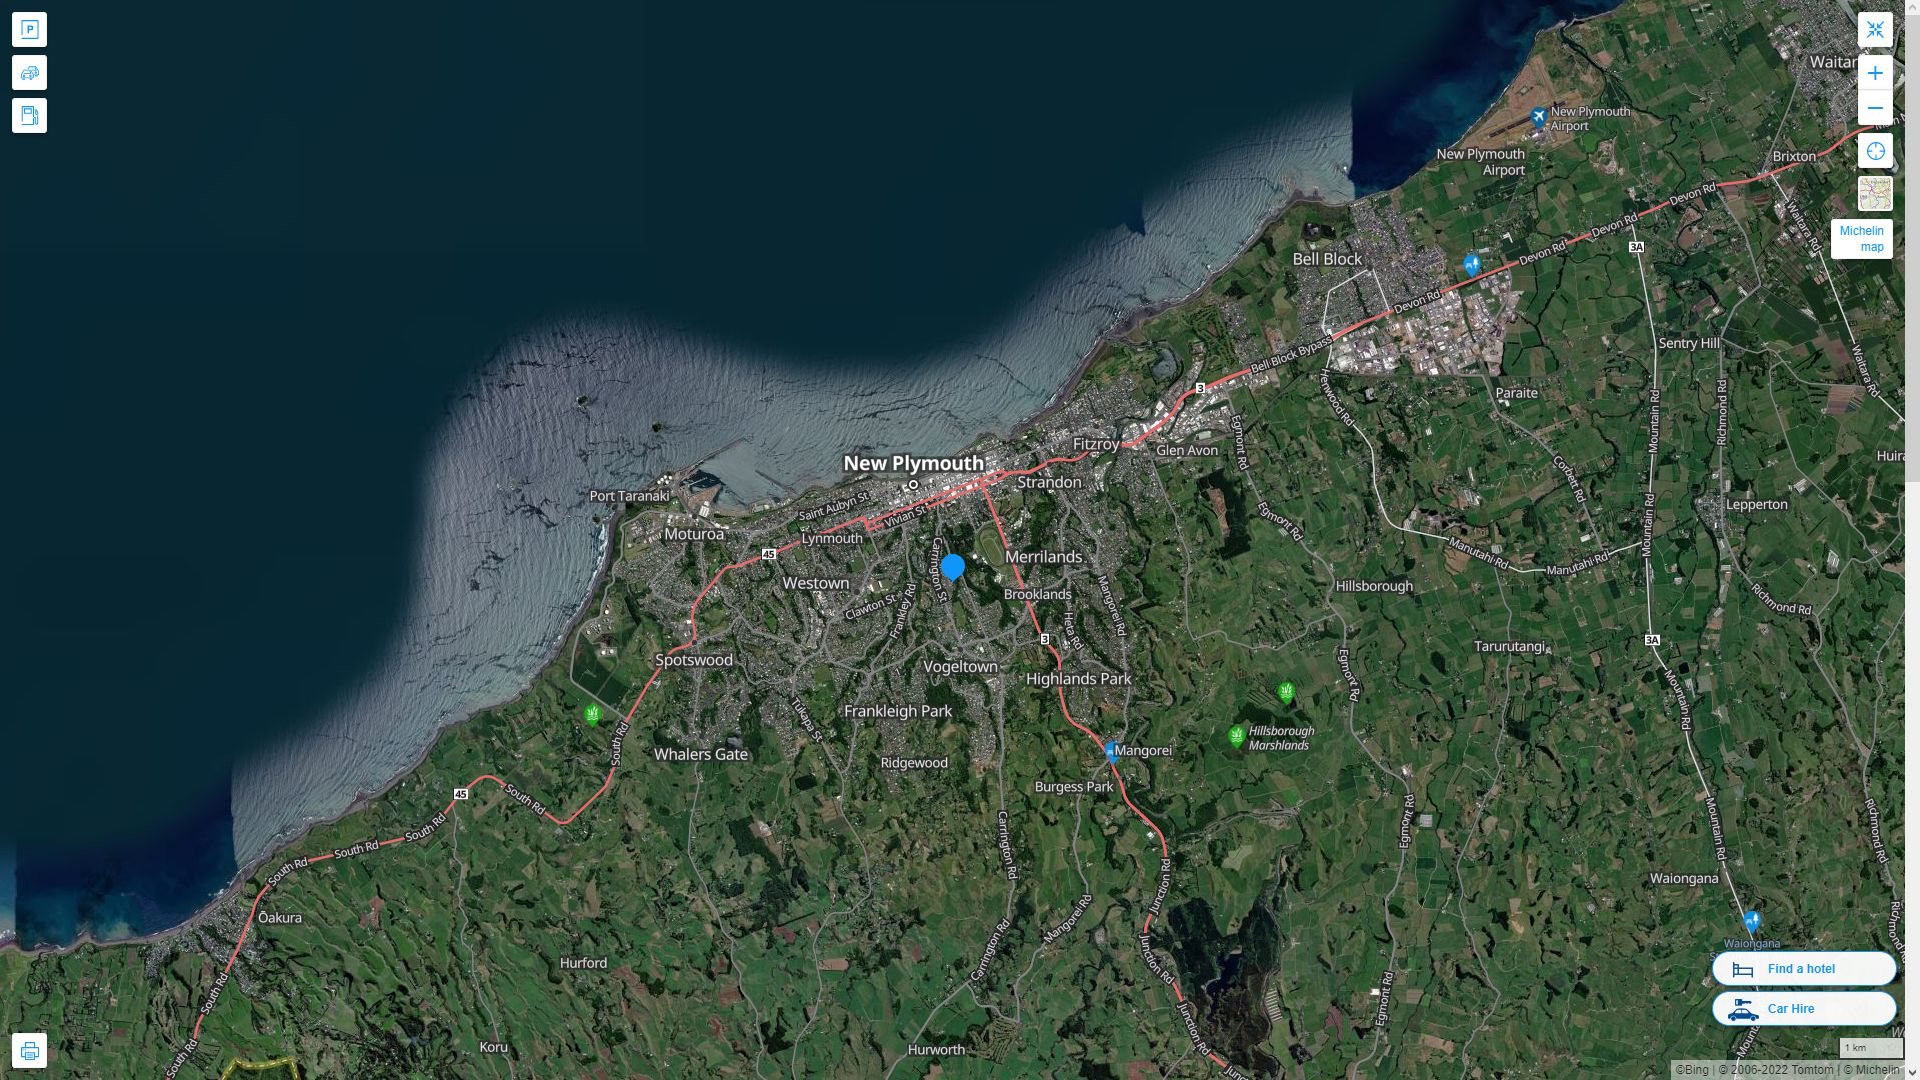 New Plymouth Nouvelle Zelande Autoroute et carte routiere avec vue satellite